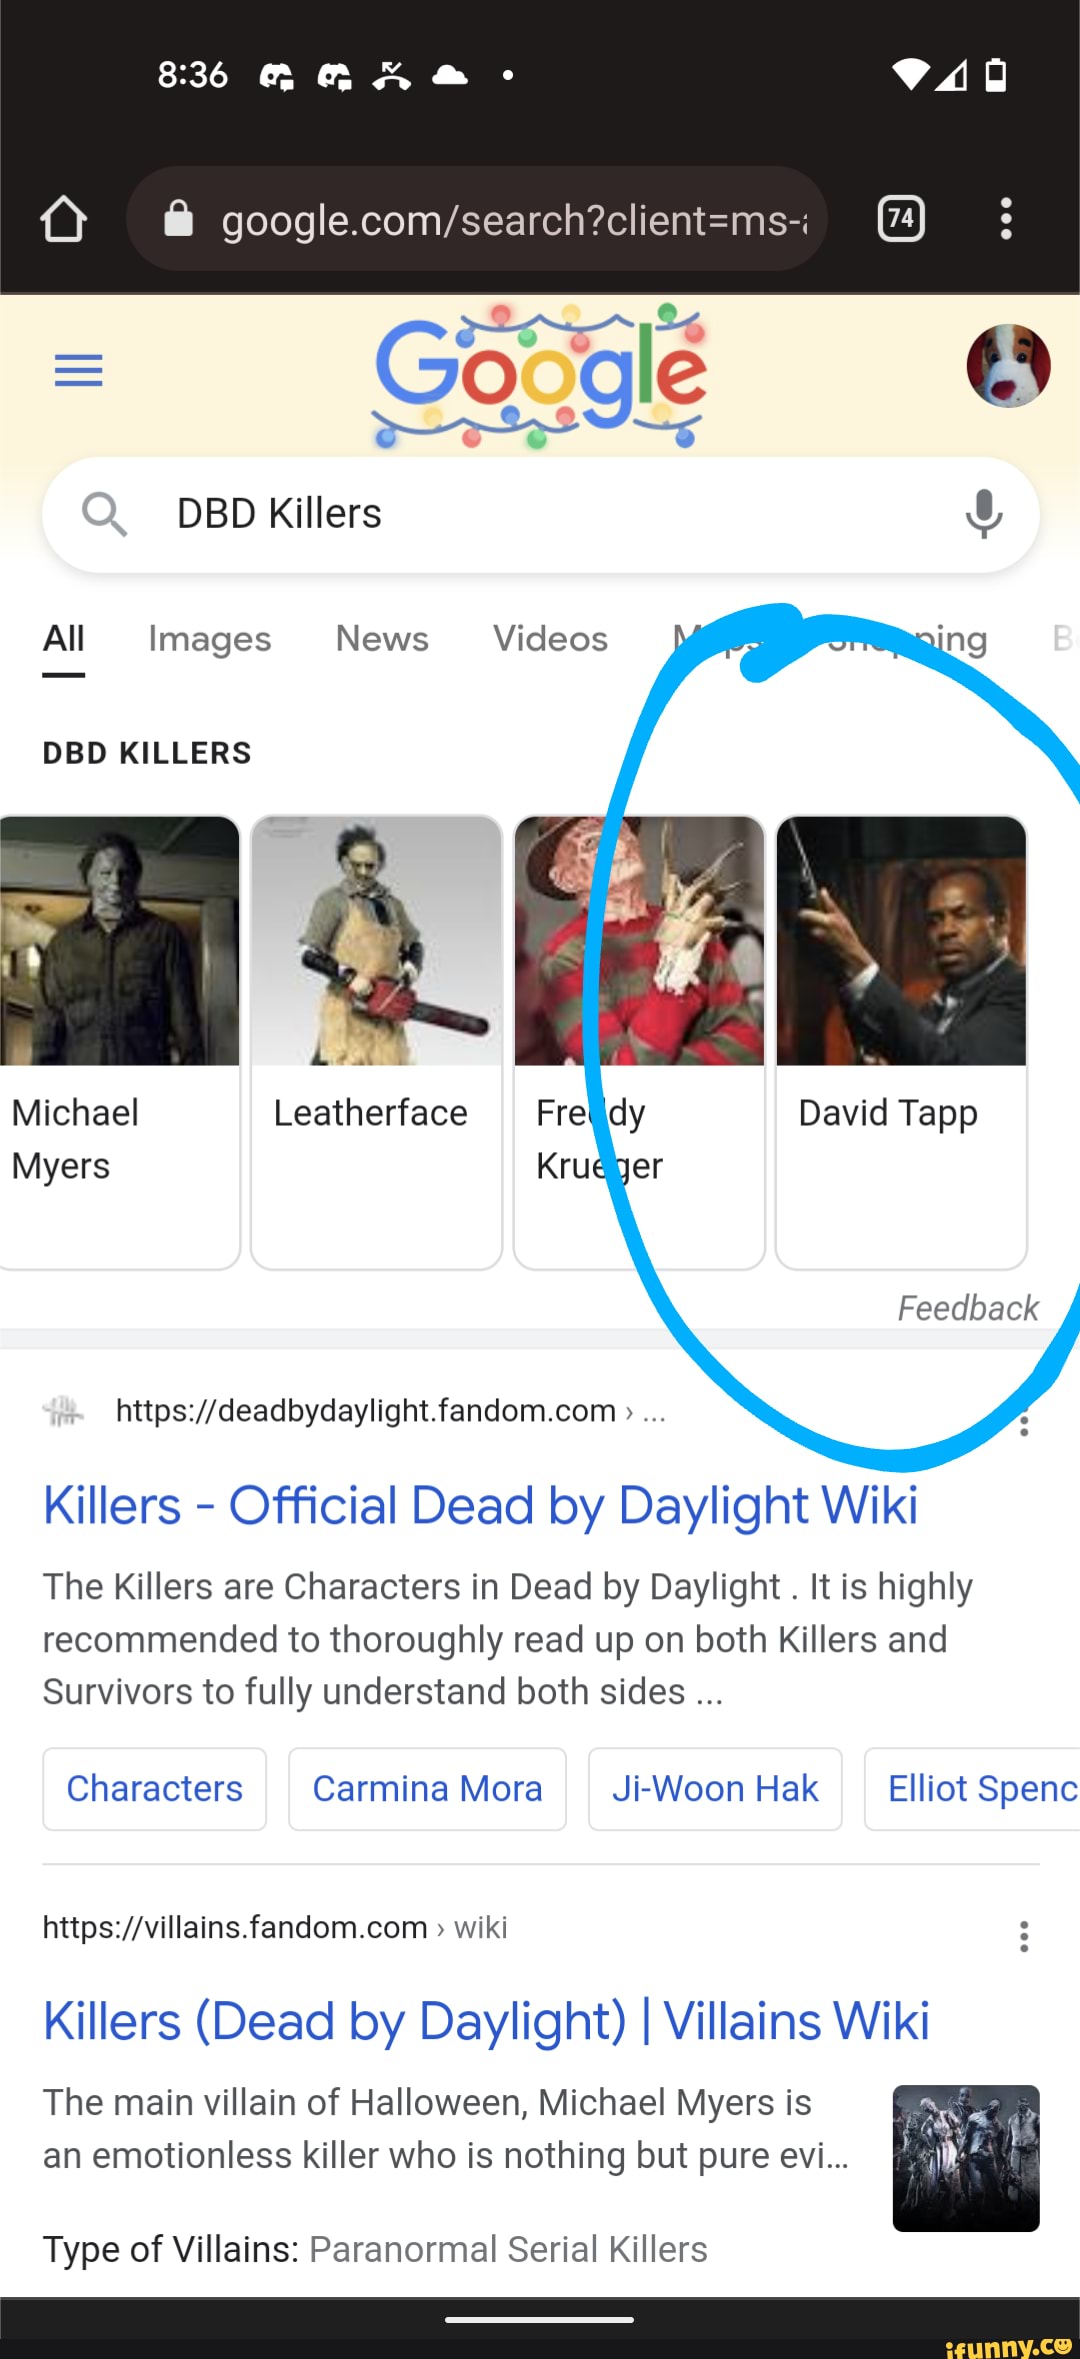 Killers (Dead by Daylight), Villains Wiki